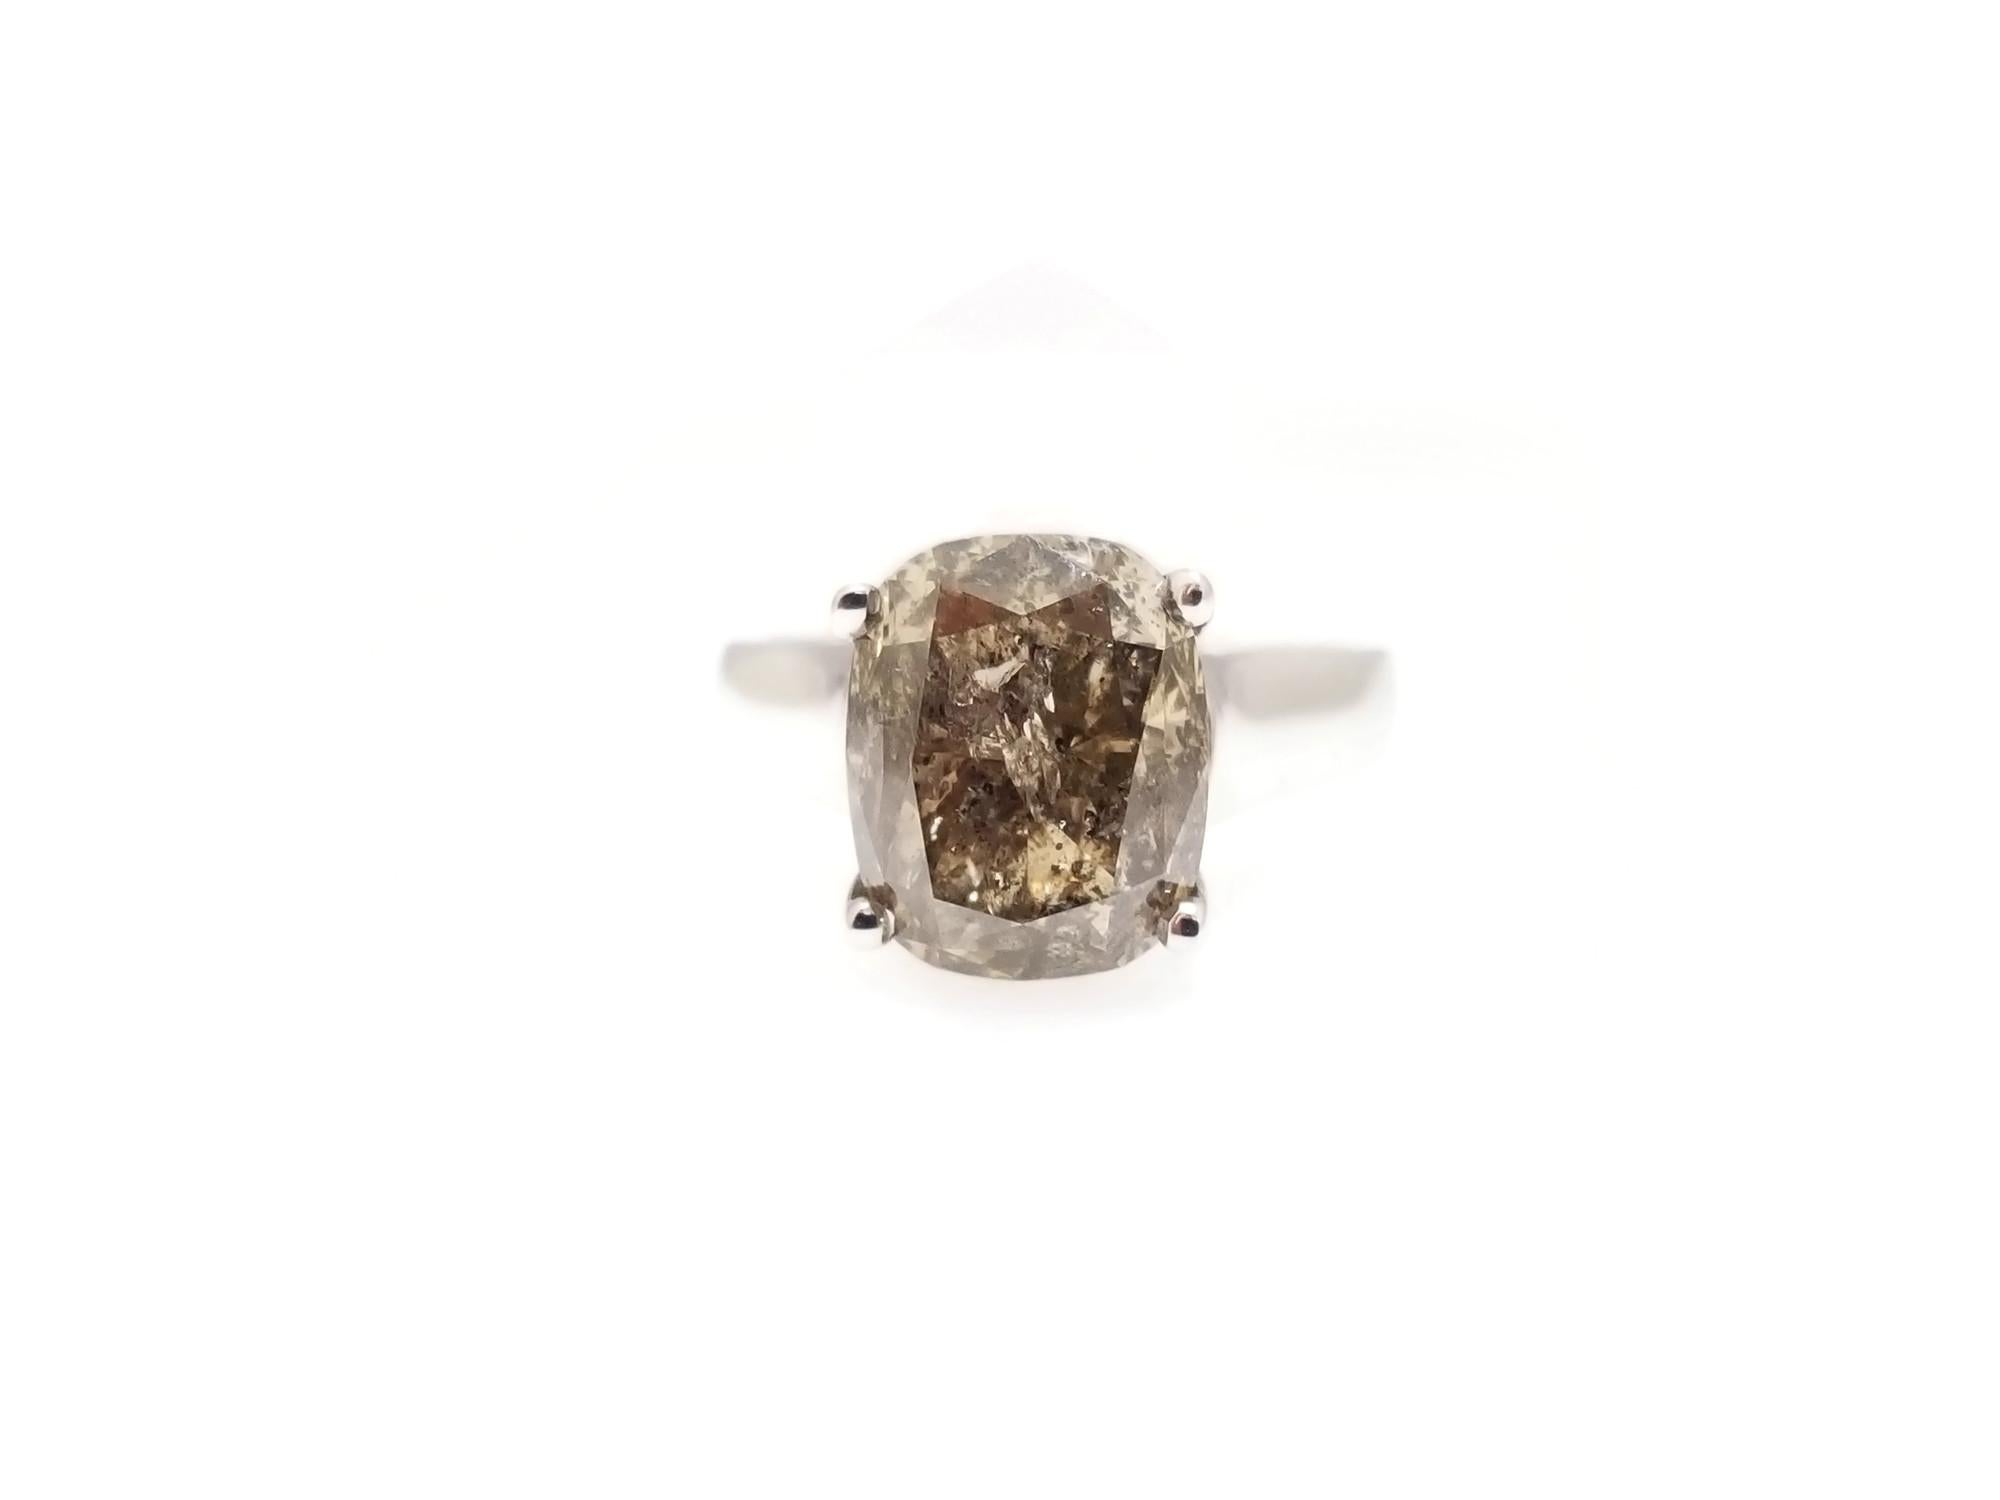 Diamant taille coussin de couleur naturelle brun jaune foncé GIA pesant 6,13 carats. solitaire à 4 griffes sur or blanc 14K.
Taille de l'anneau : 6.5